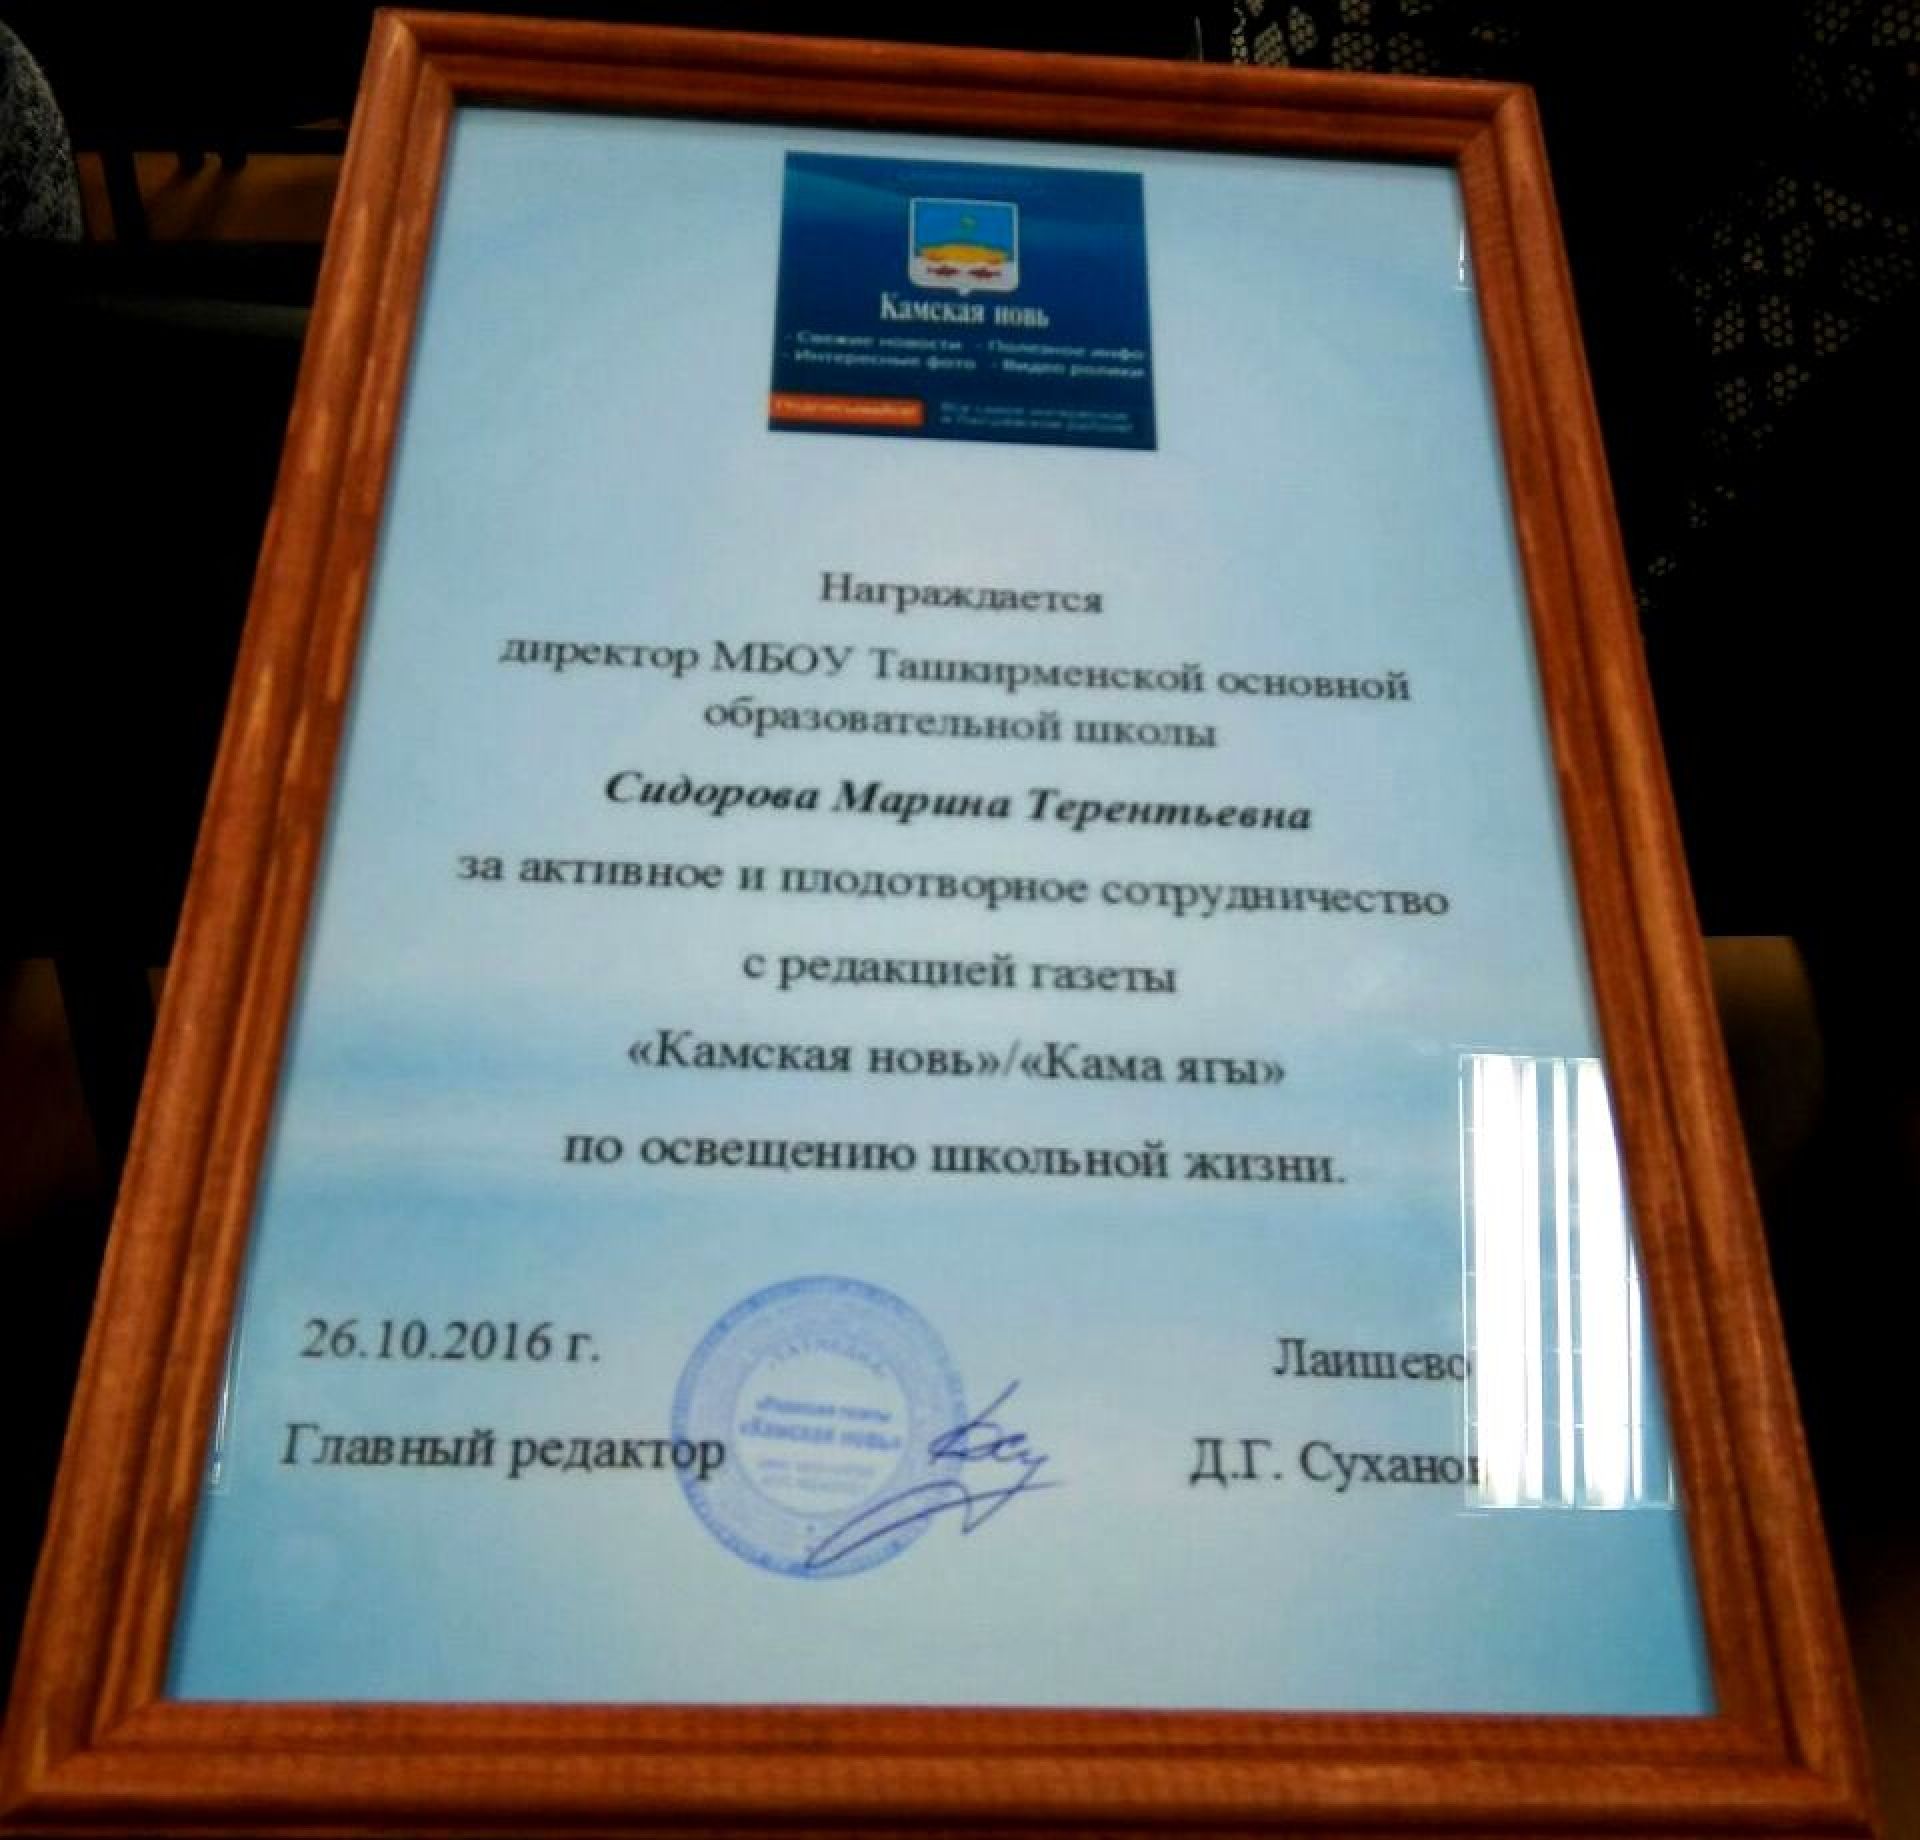 Поздравляем Марину Терентьевну Сидорову с наградой